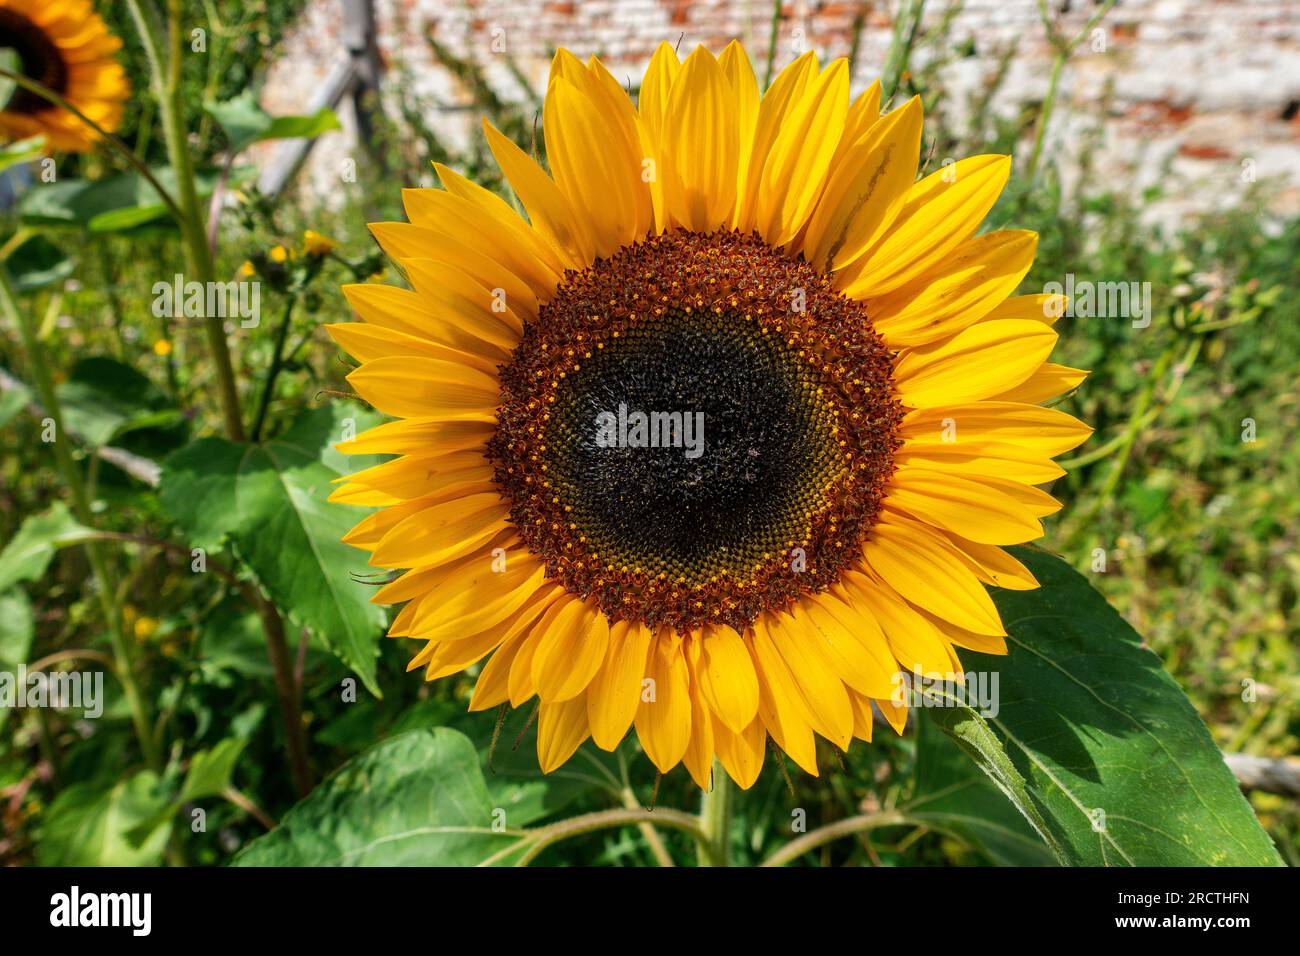 Large,yellow,Sunflower,Helianthus,Sunshine, Stock Photo